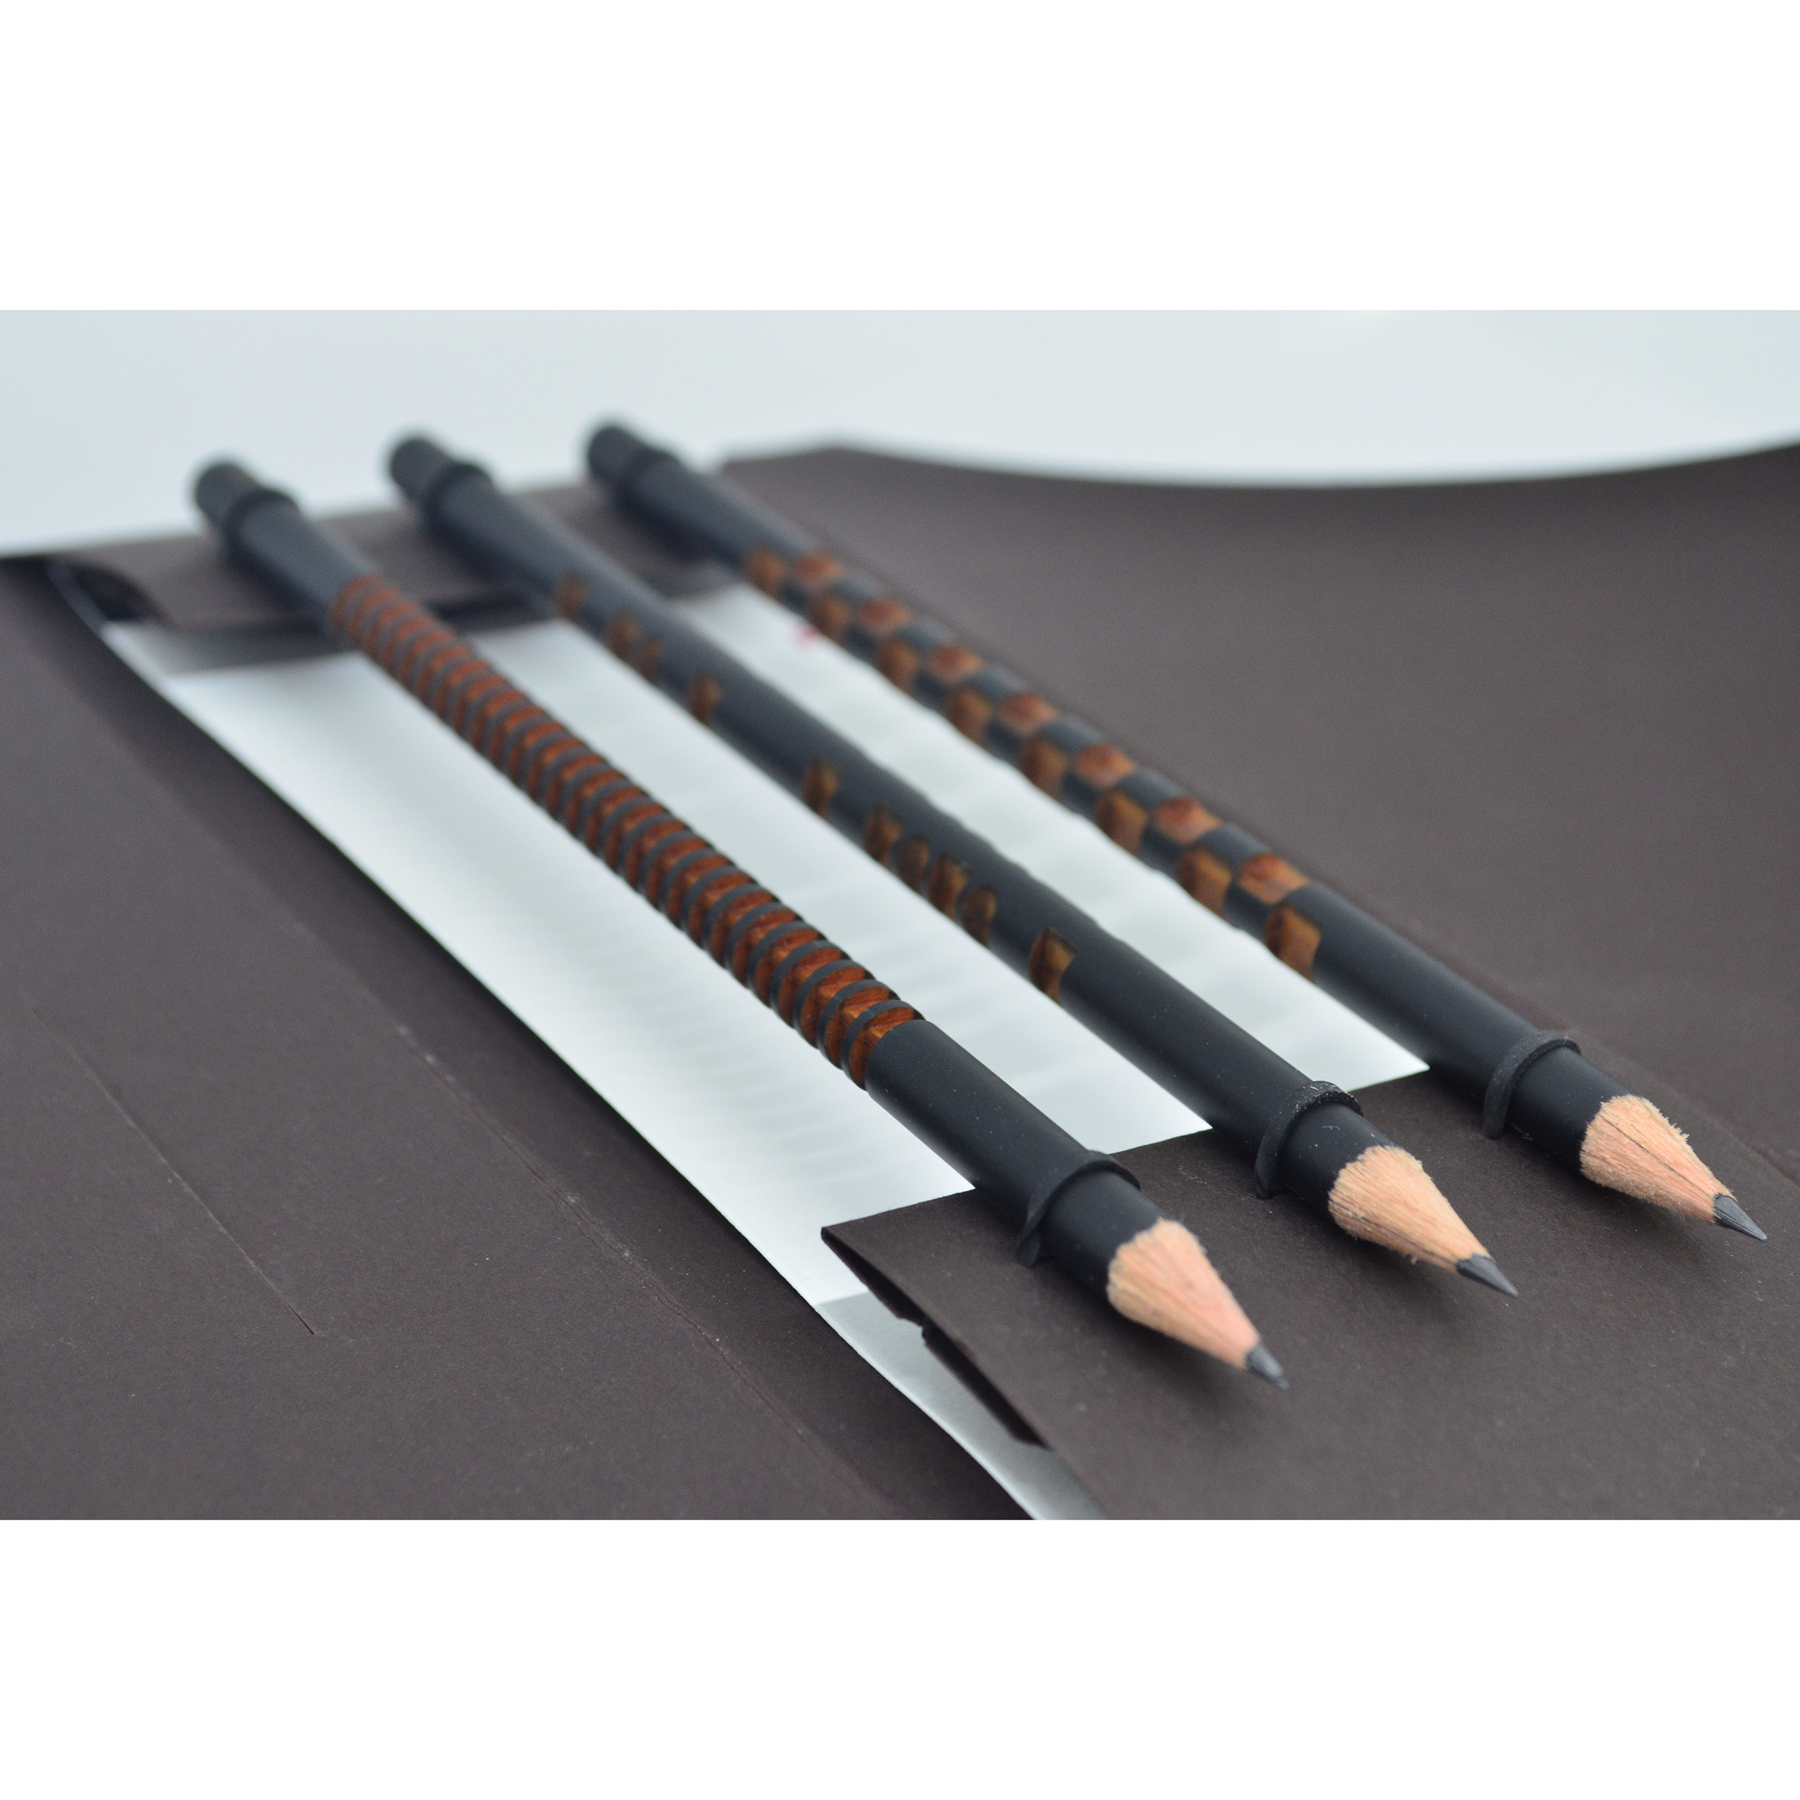 Tat-Tat, Ornamental Pencil Set of 3, Pens & Pencils,